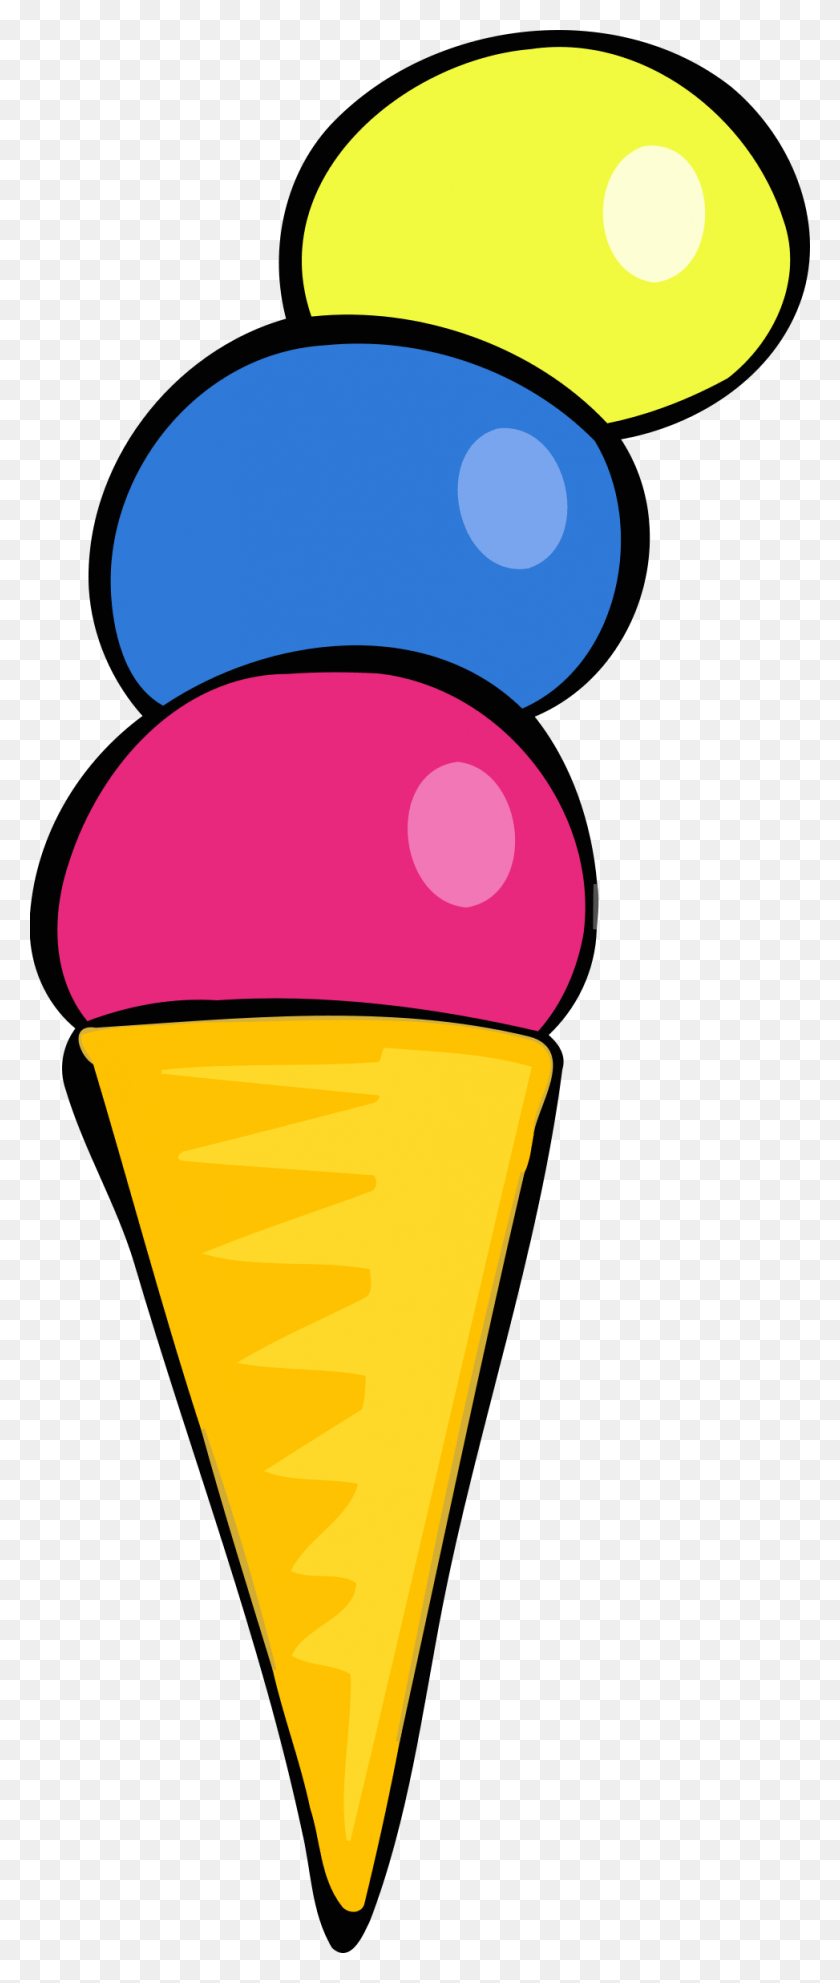 973x2400 This Free Icons Design Of Ice Cream 1 Ice Cream, Cone, Cream, Dessert HD PNG Download